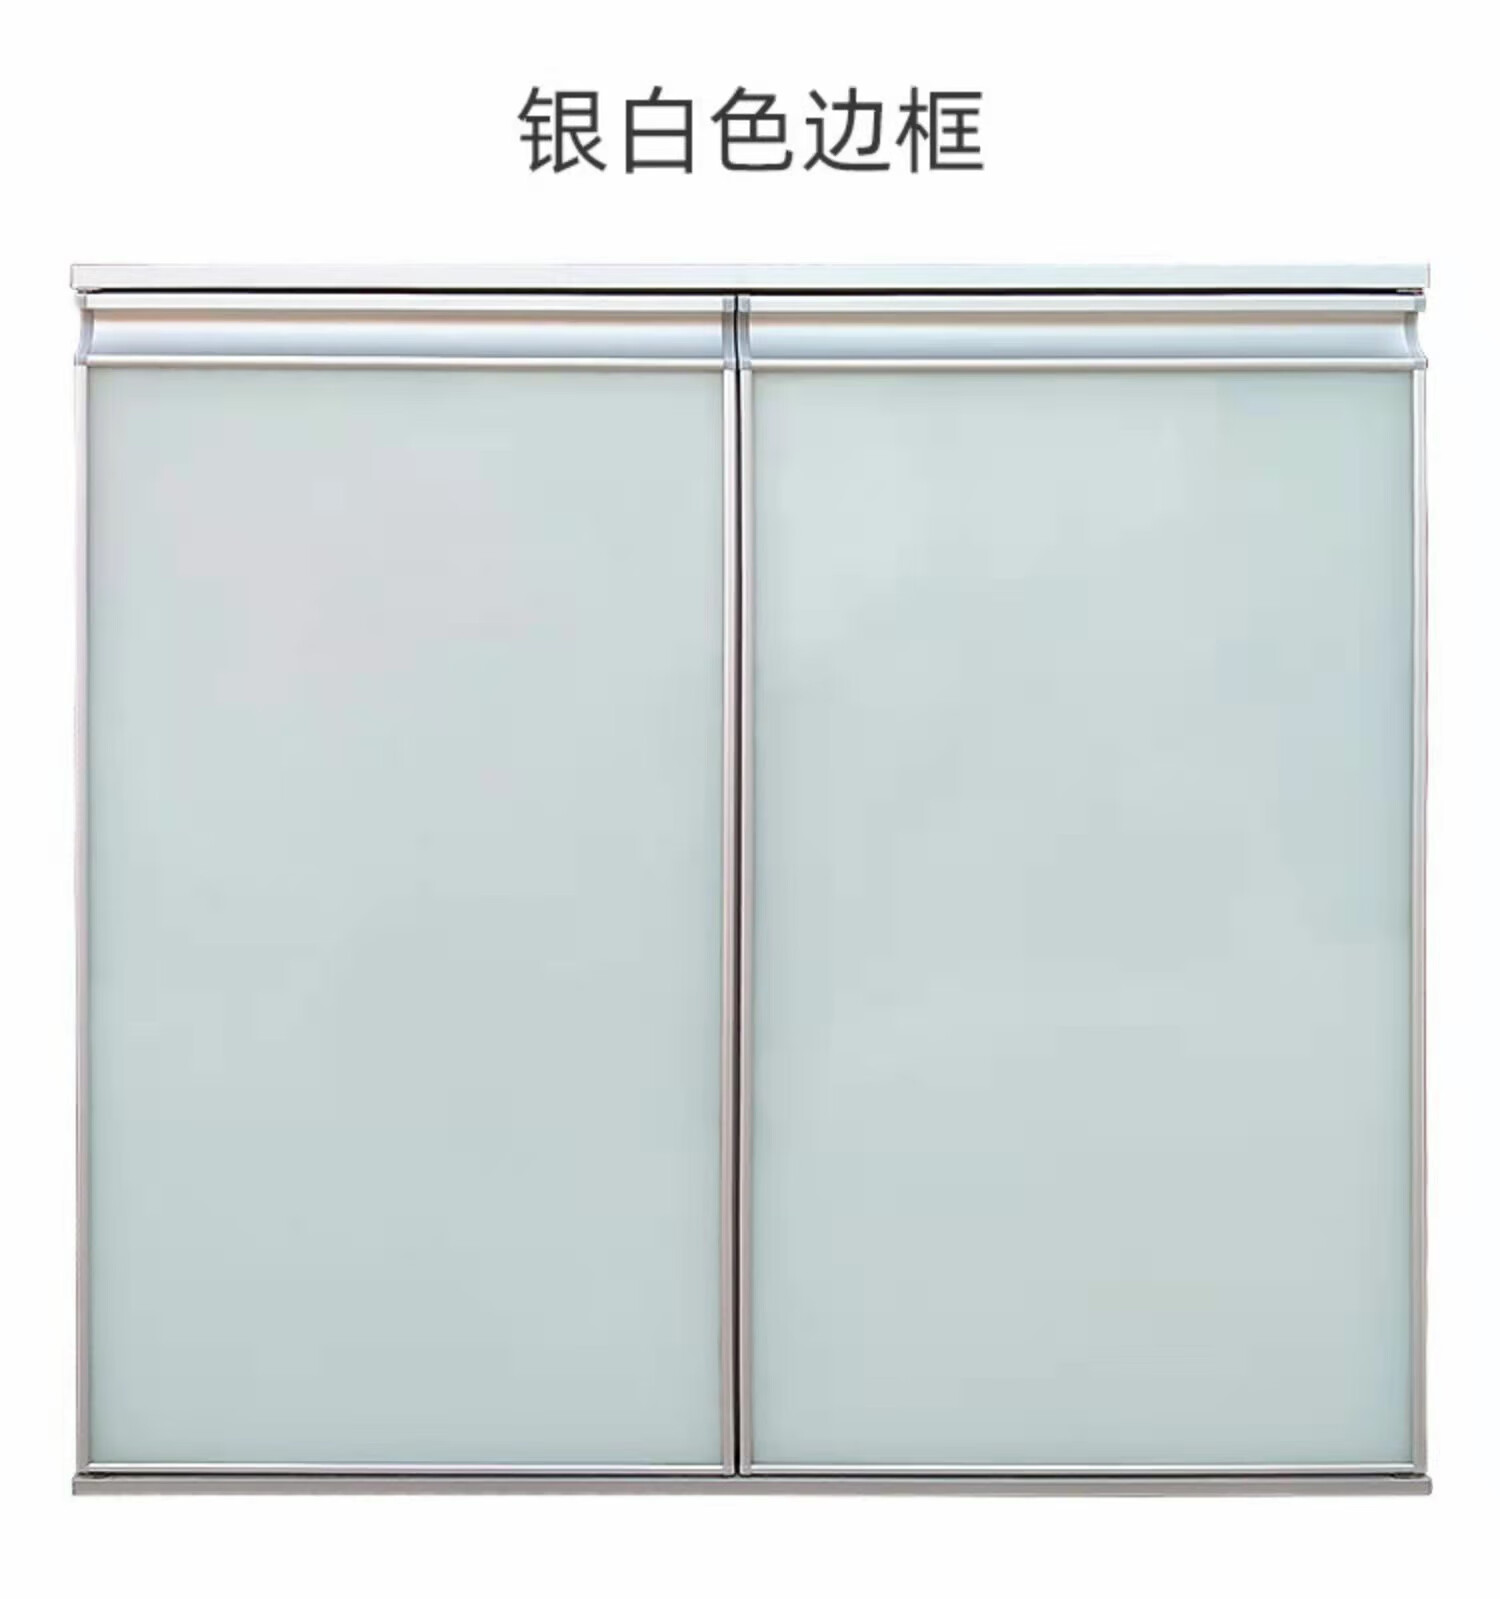 橱柜门定做柜门厨房灶台柜门自装带框钢化玻璃晶钢门定制橱柜门板